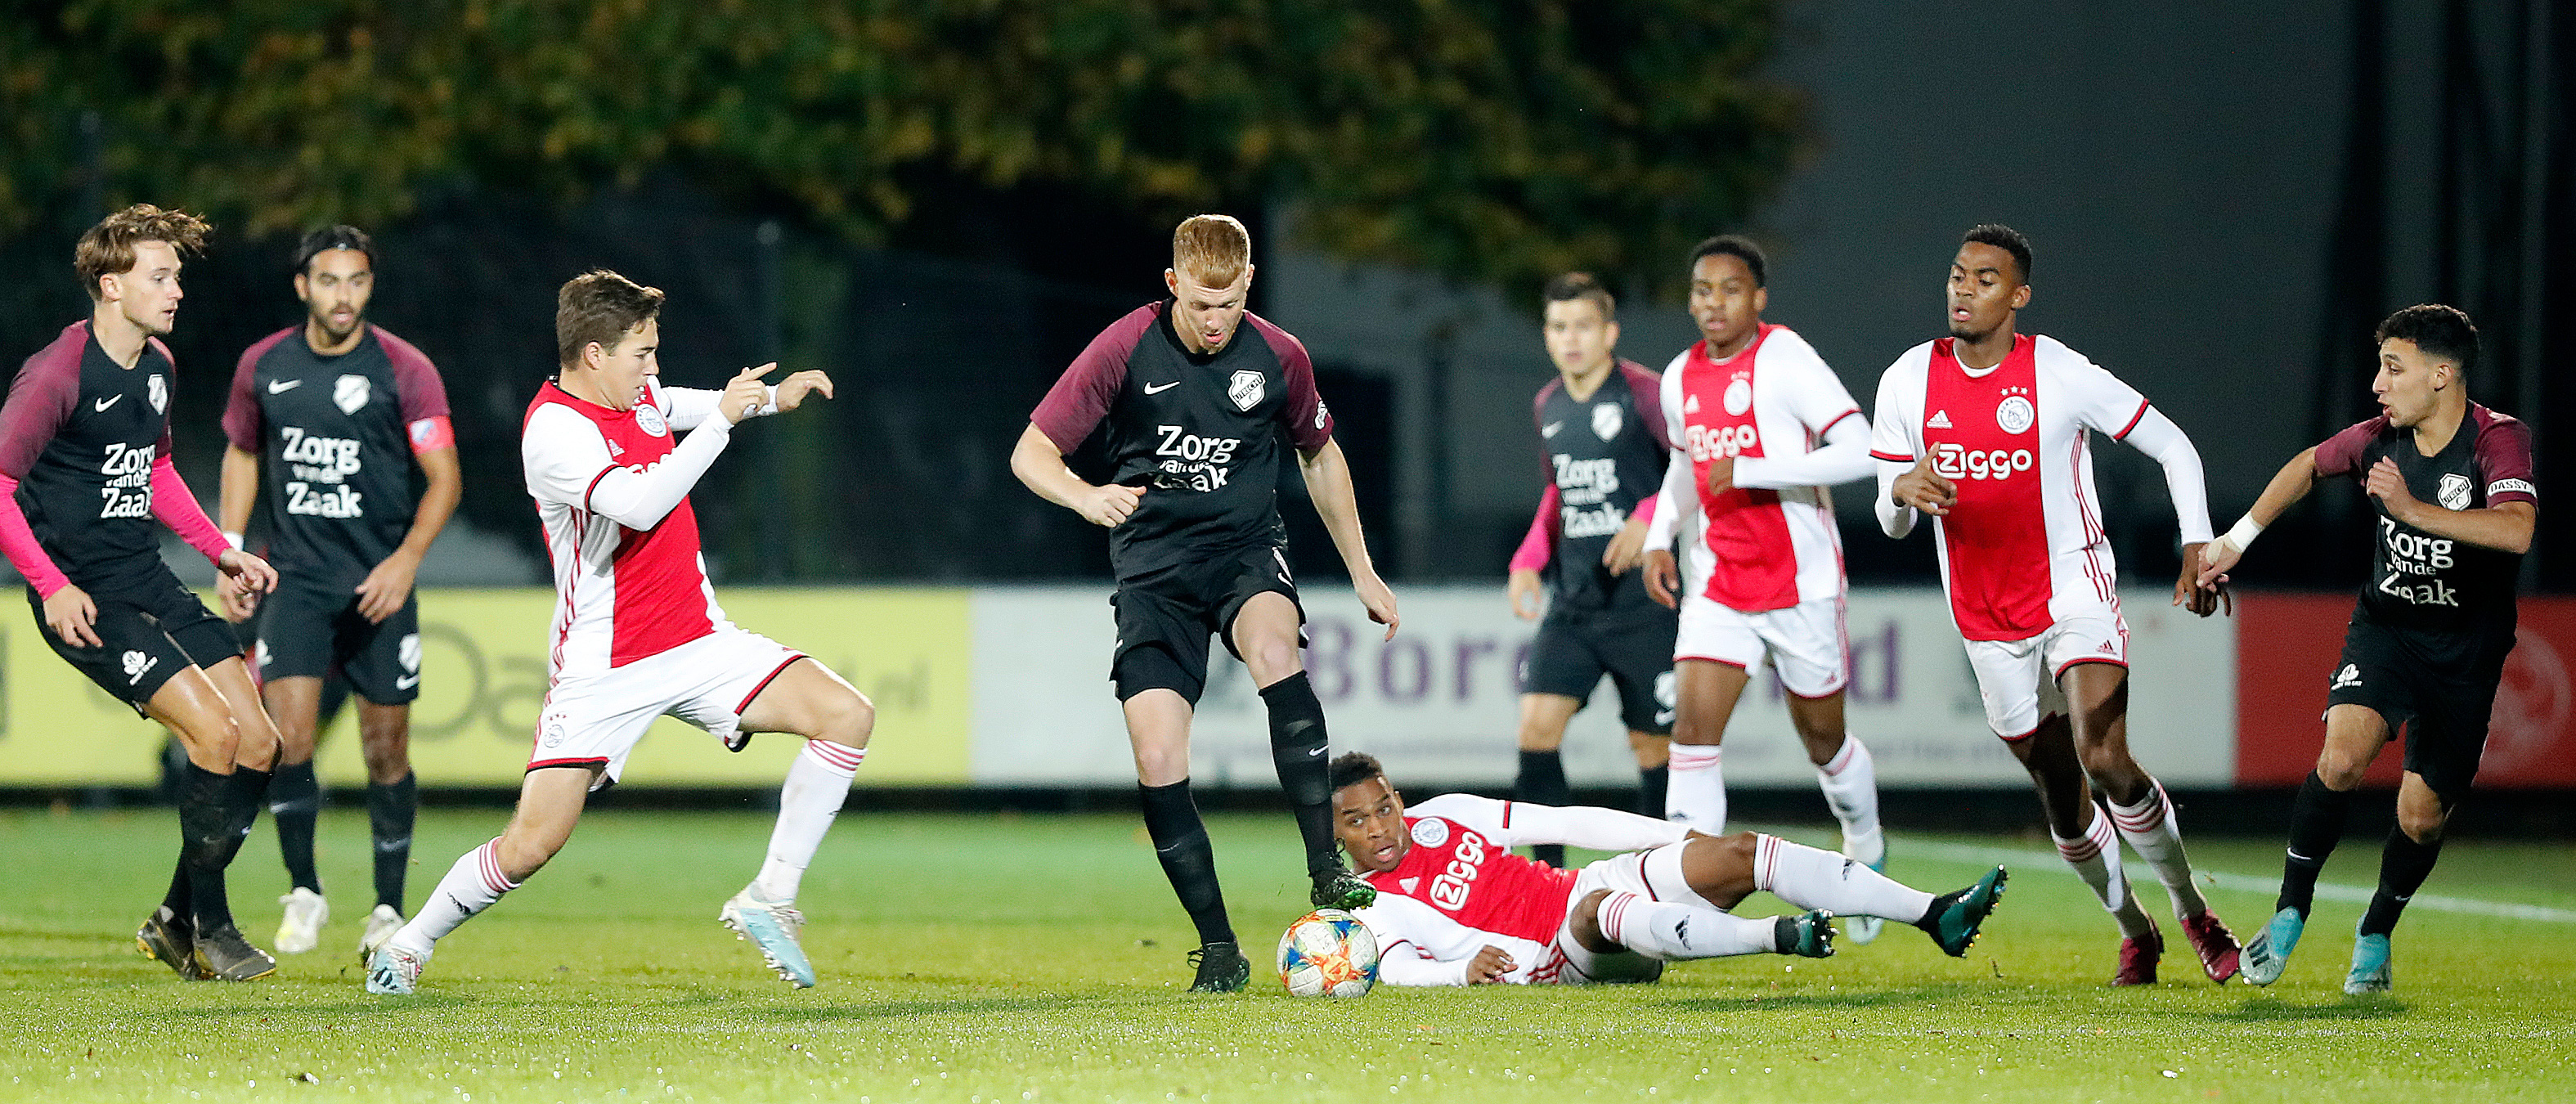 Ongeslagen reeks Jong FC Utrecht ten einde